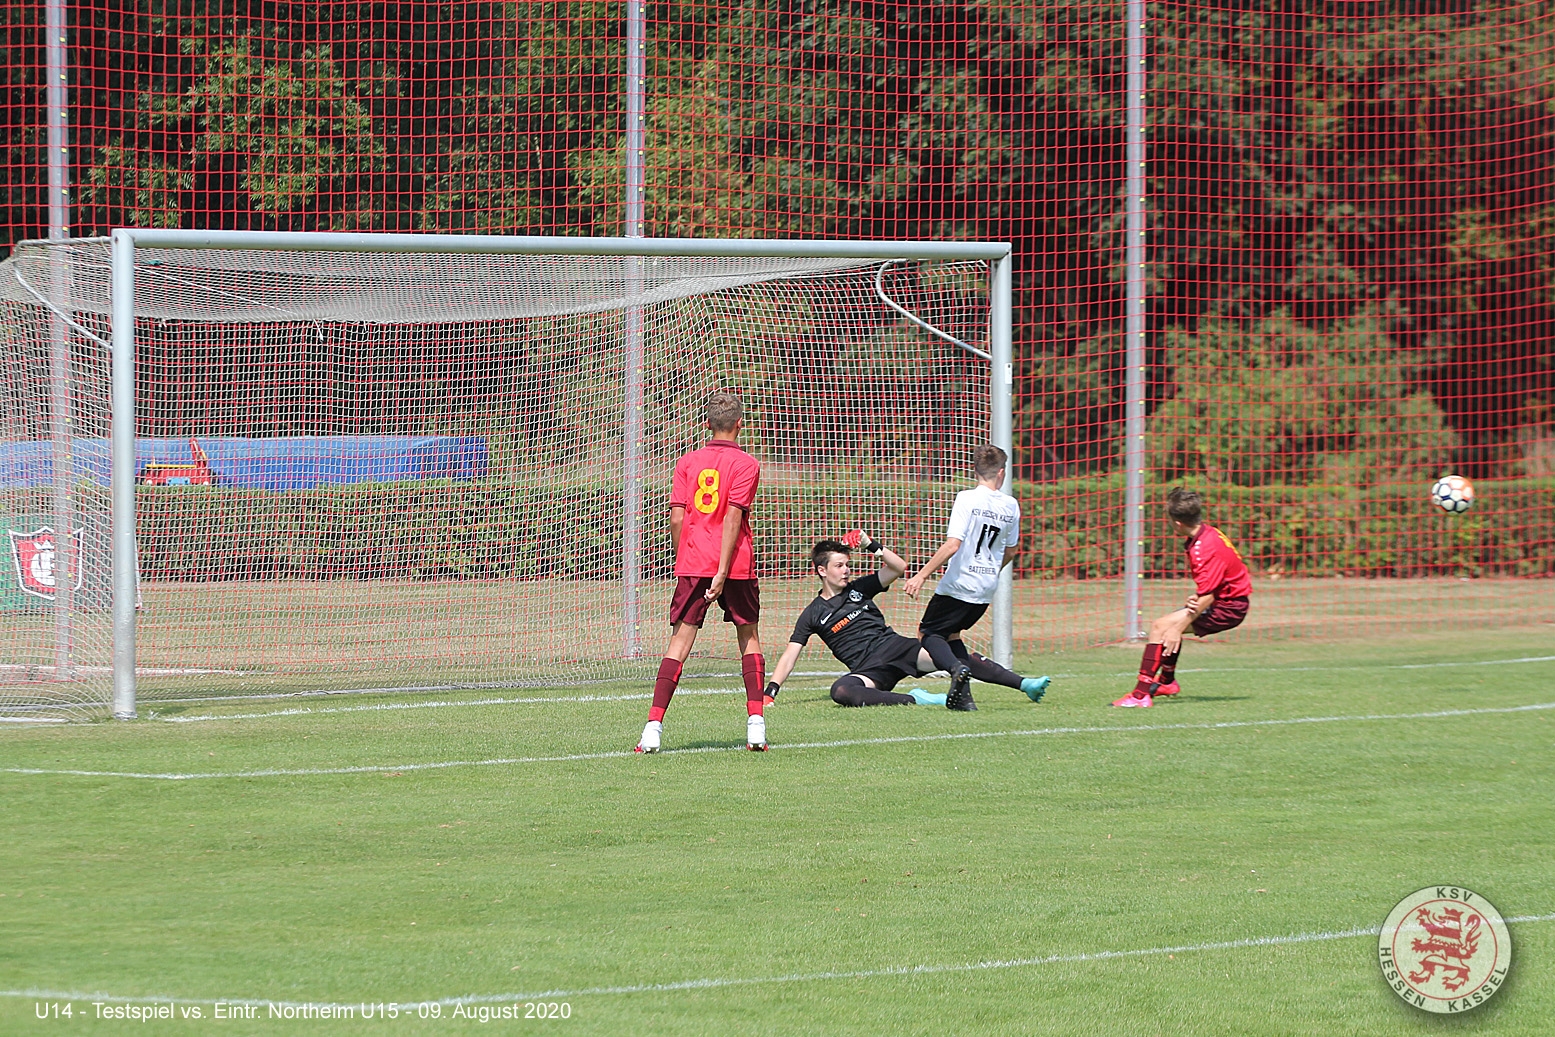 Eintracht Northeim U15 - U14